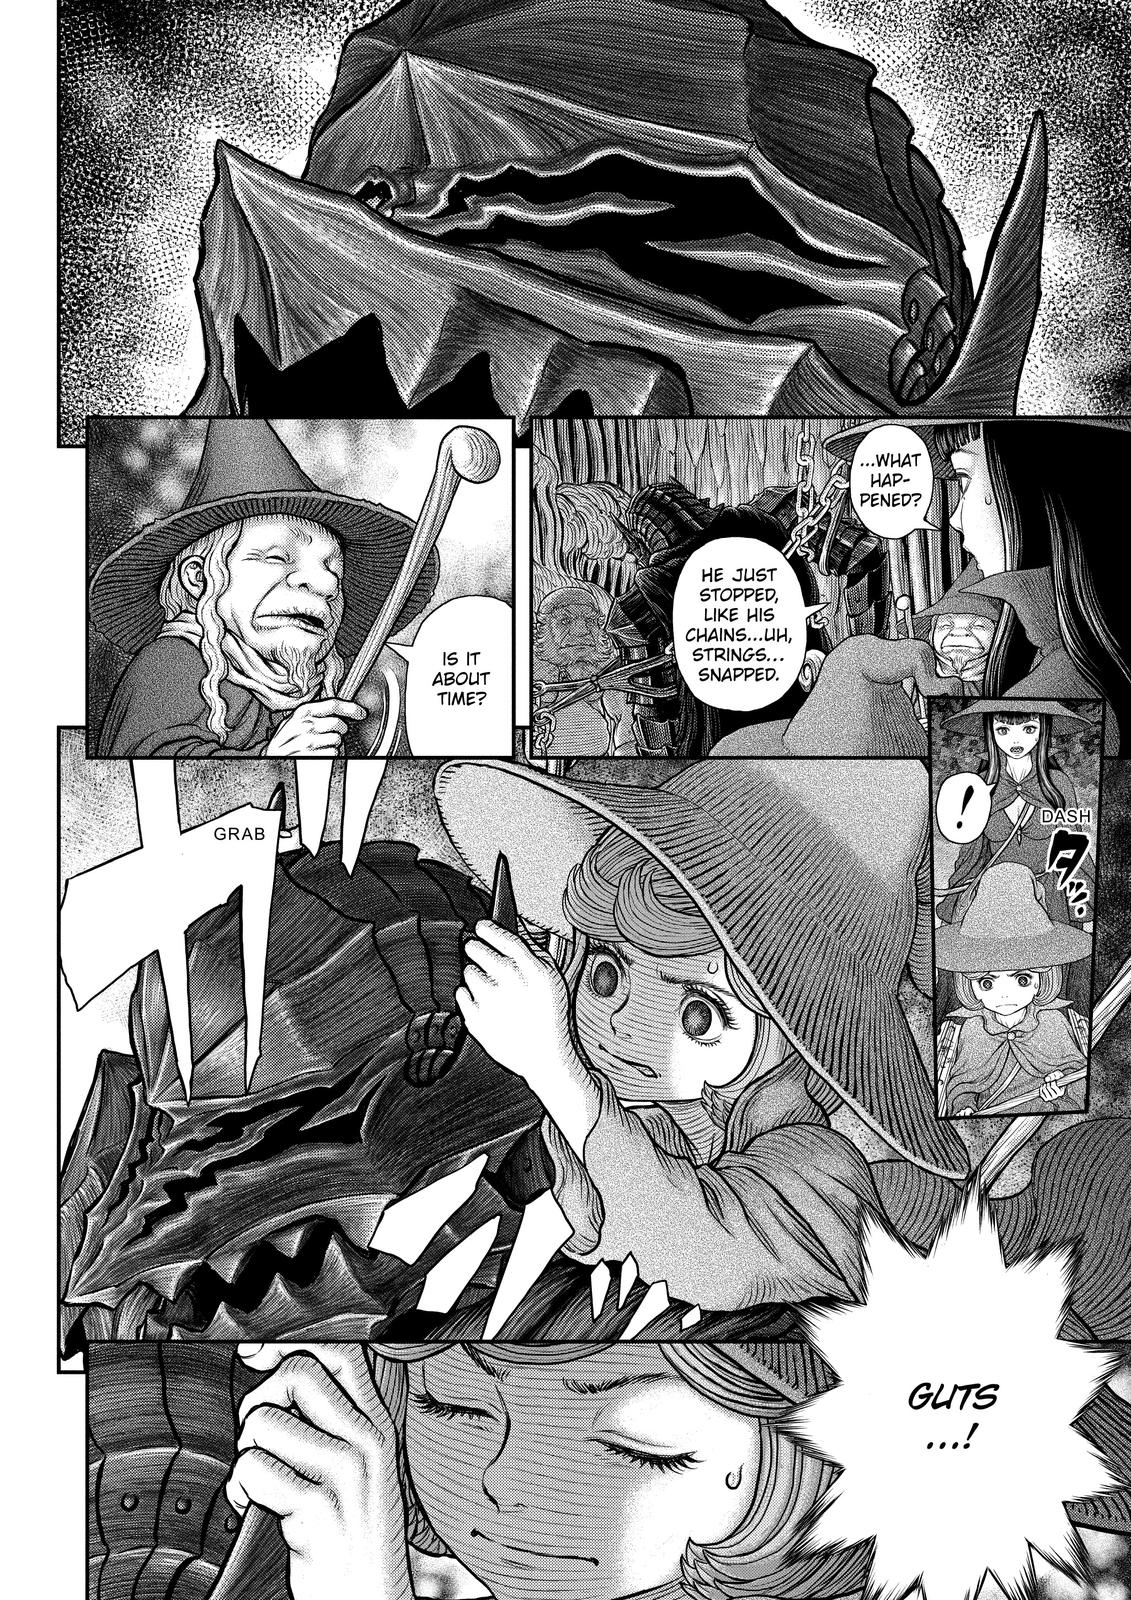 Berserk Manga Chapter 362 image 11